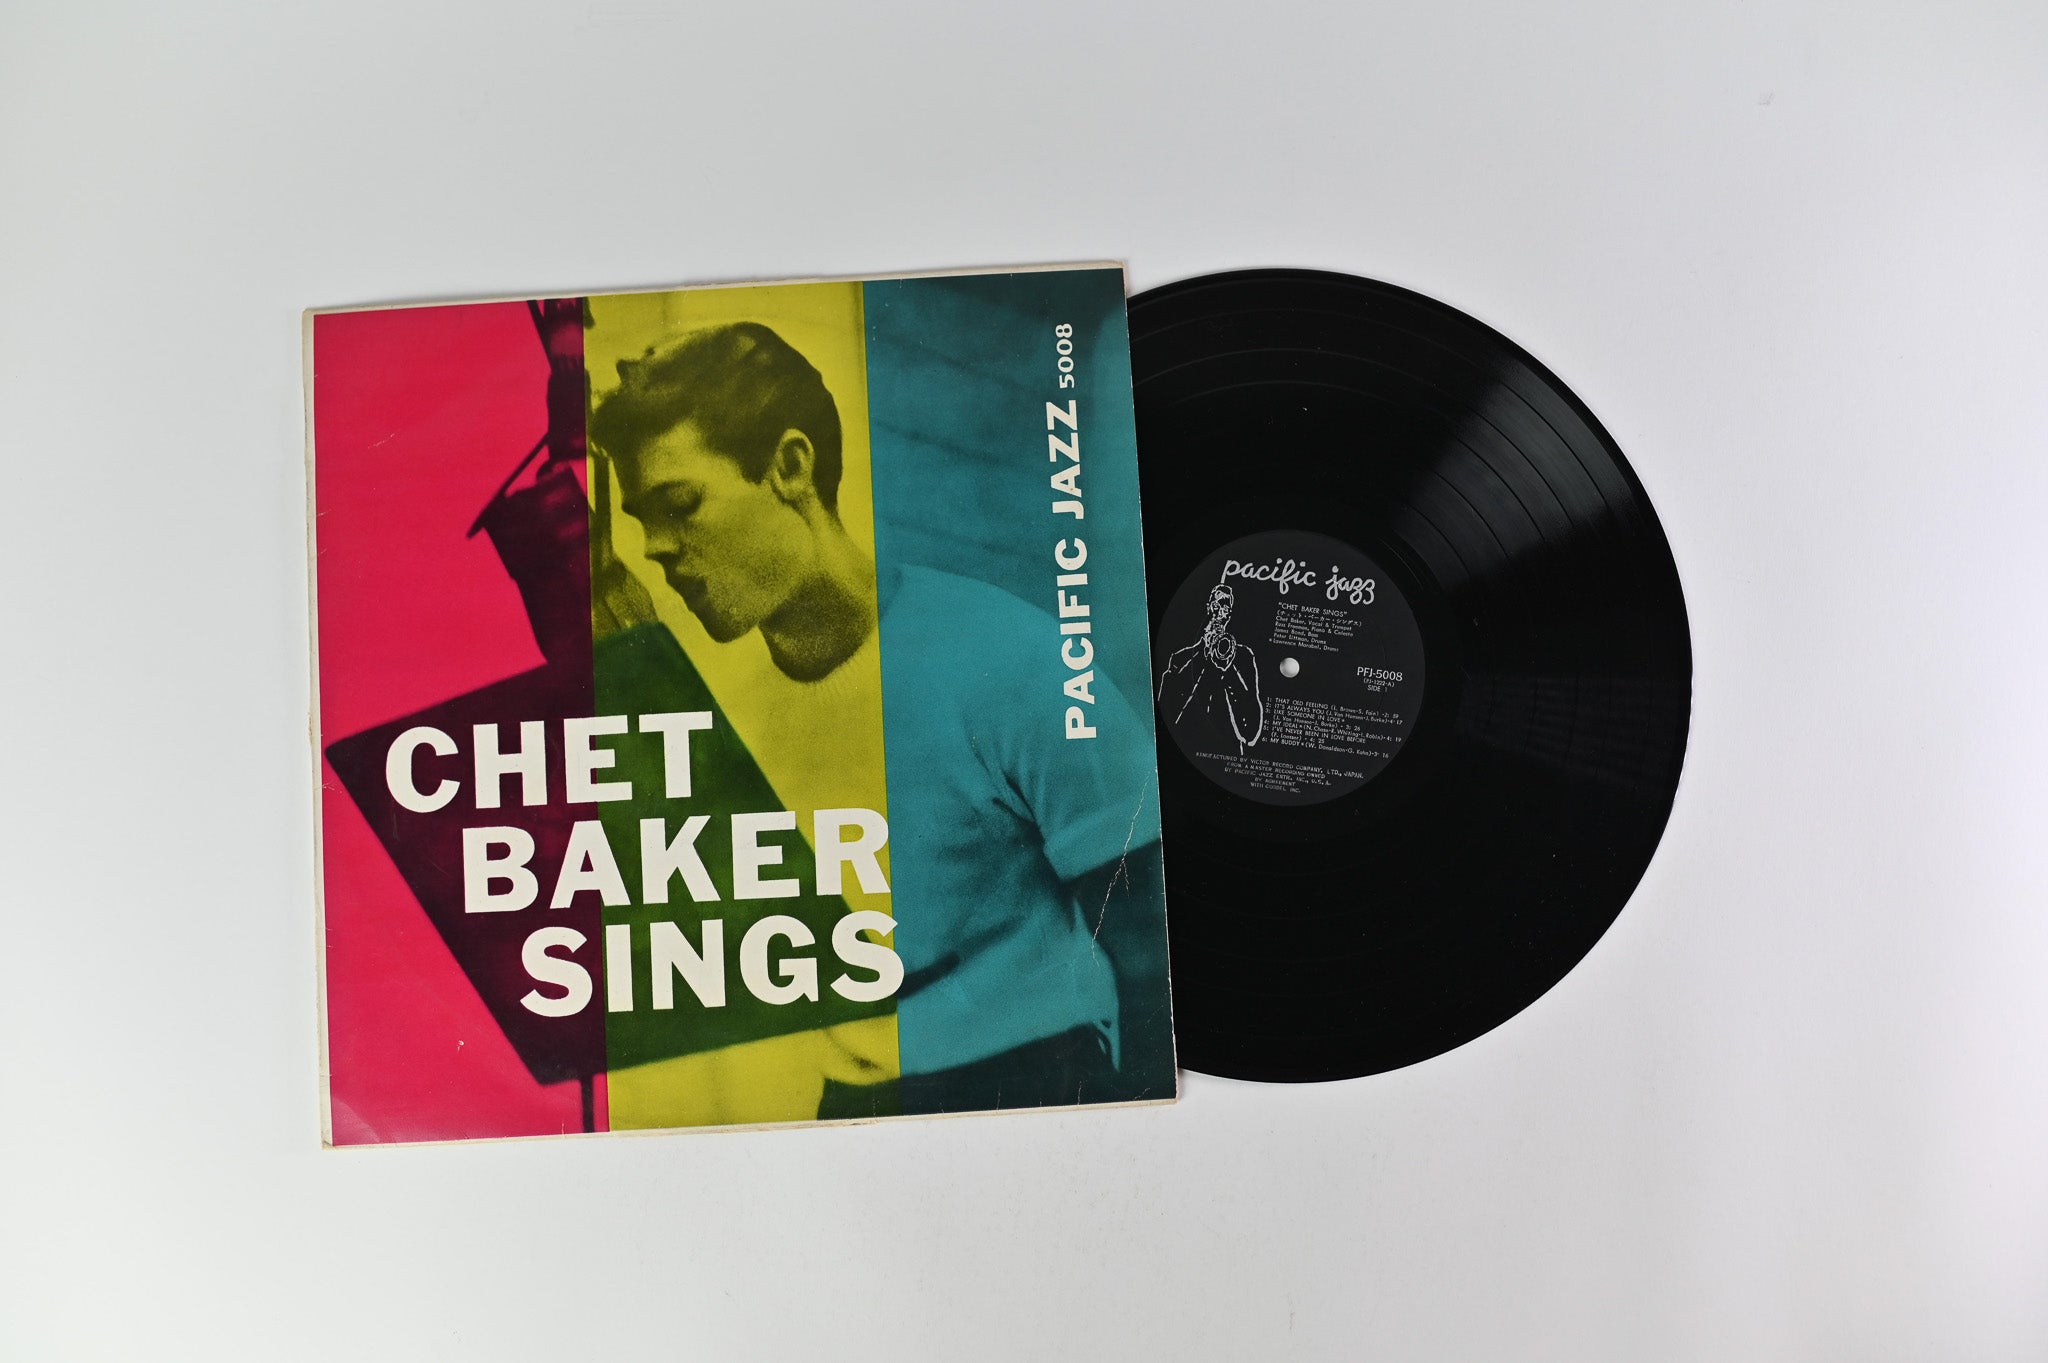 Chet Baker - Chet Baker Sings on Pacific Jazz PFJ 5008 Japanese Early Reissue